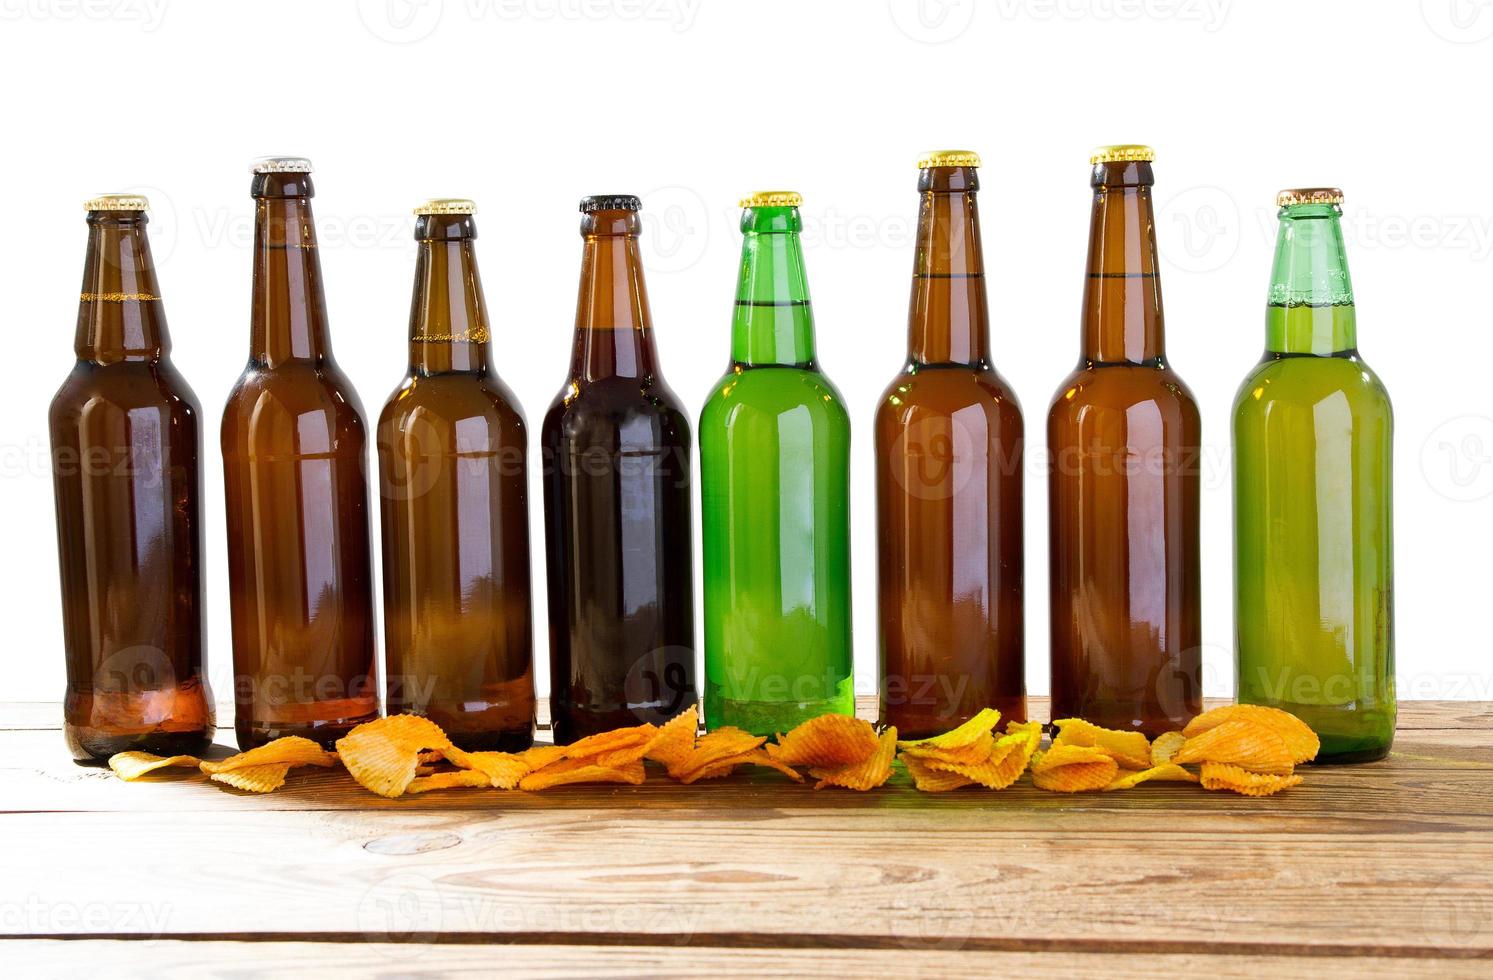 zet glazen flessen bier mock-up zonder etiket en chips op houten tafel geïsoleerd, kopieer ruimte foto